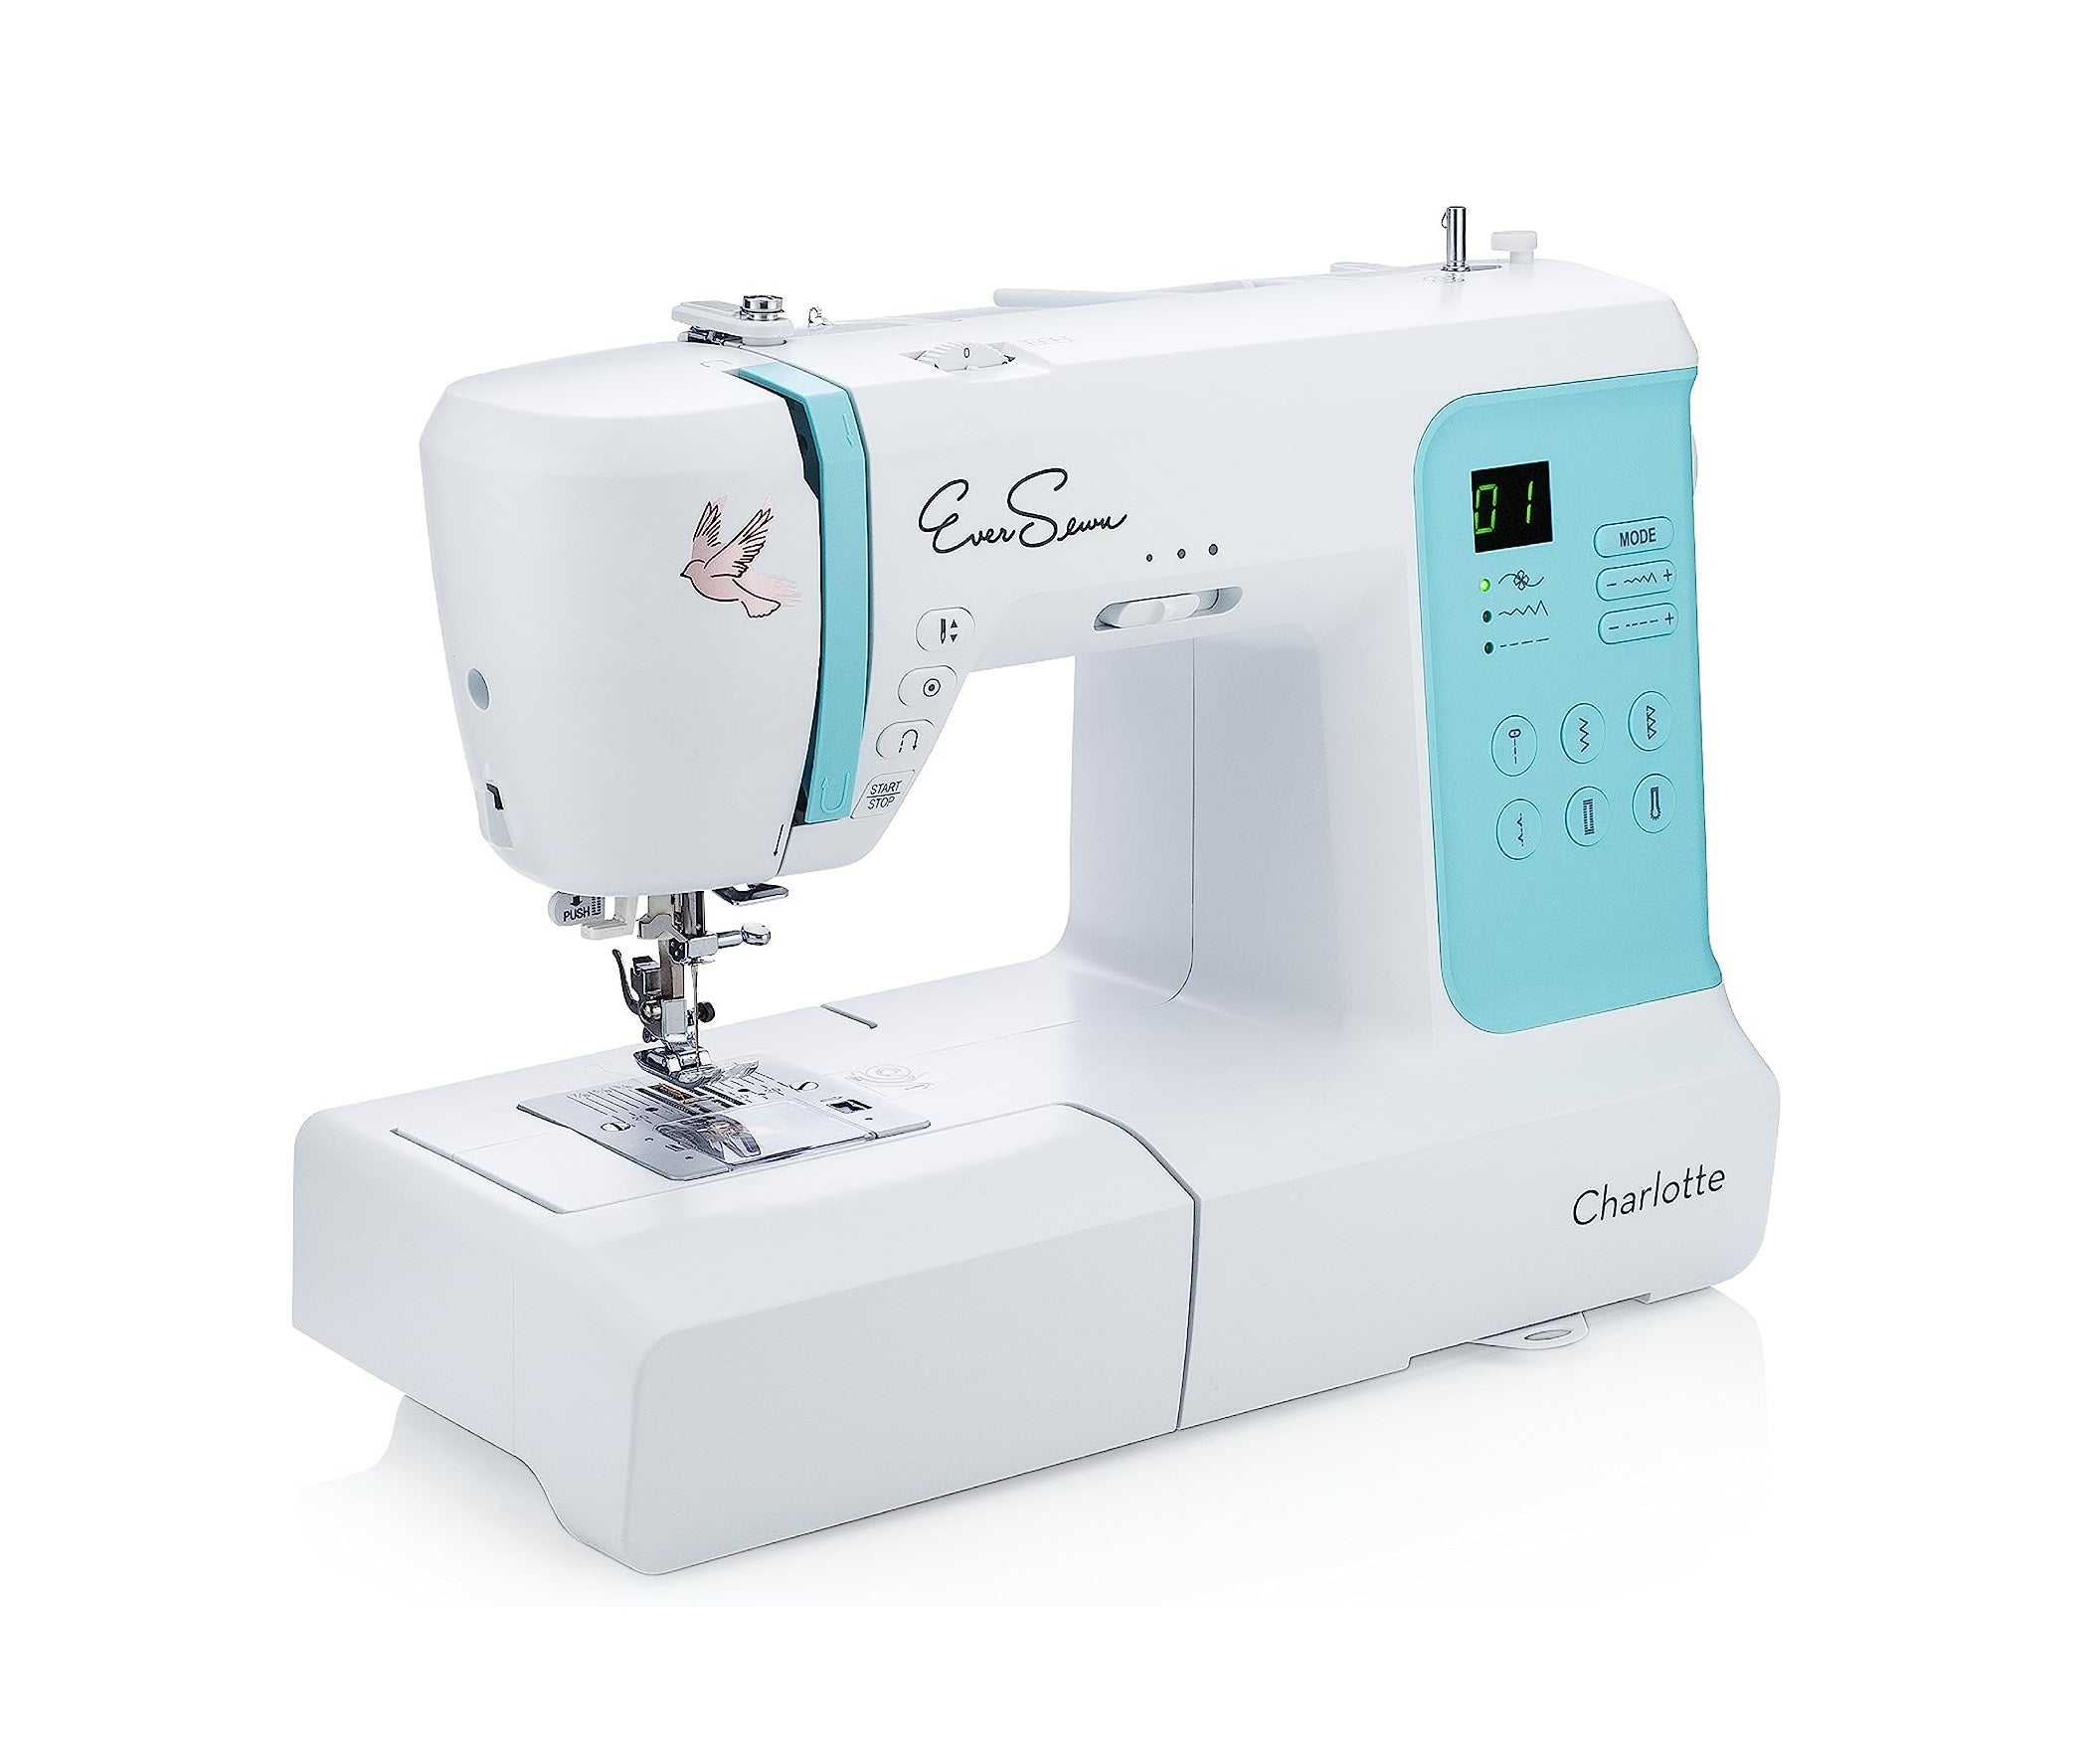 EverSewn Charlotte Sewing Machine